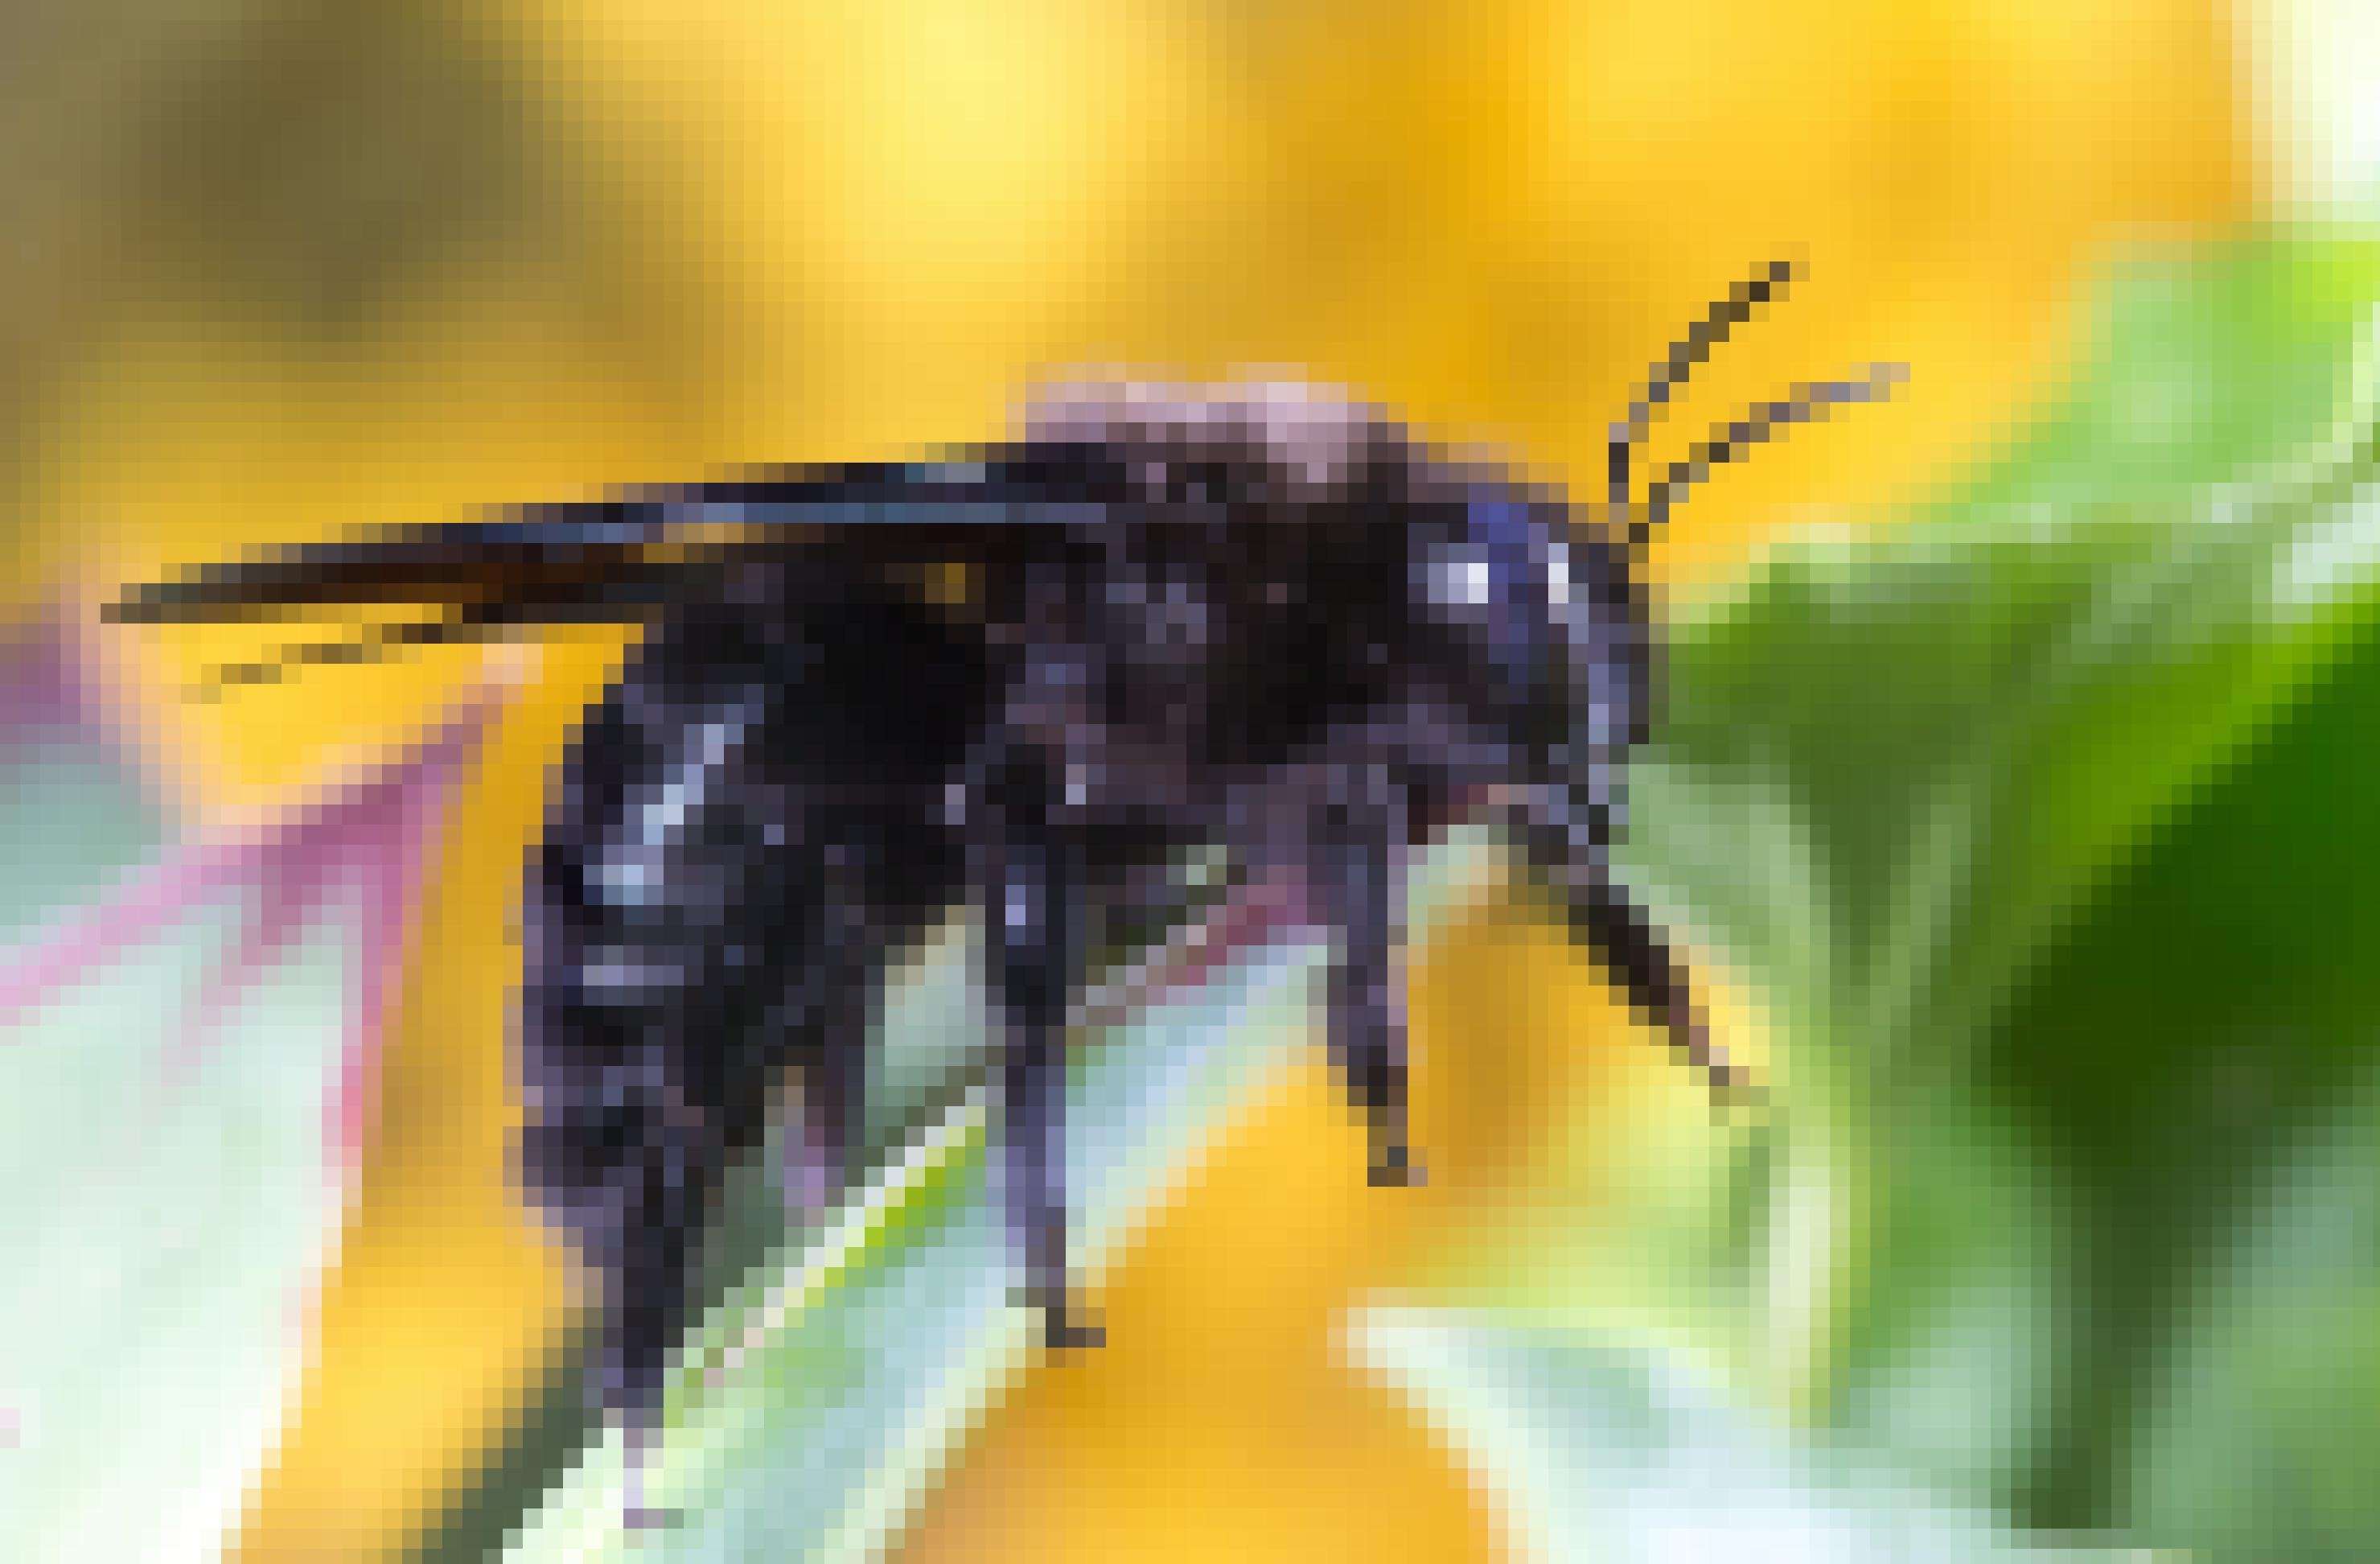 Eine tiefschwarze Biene mit dunkelgrauen Streifen sitzt auf einem Blatt.